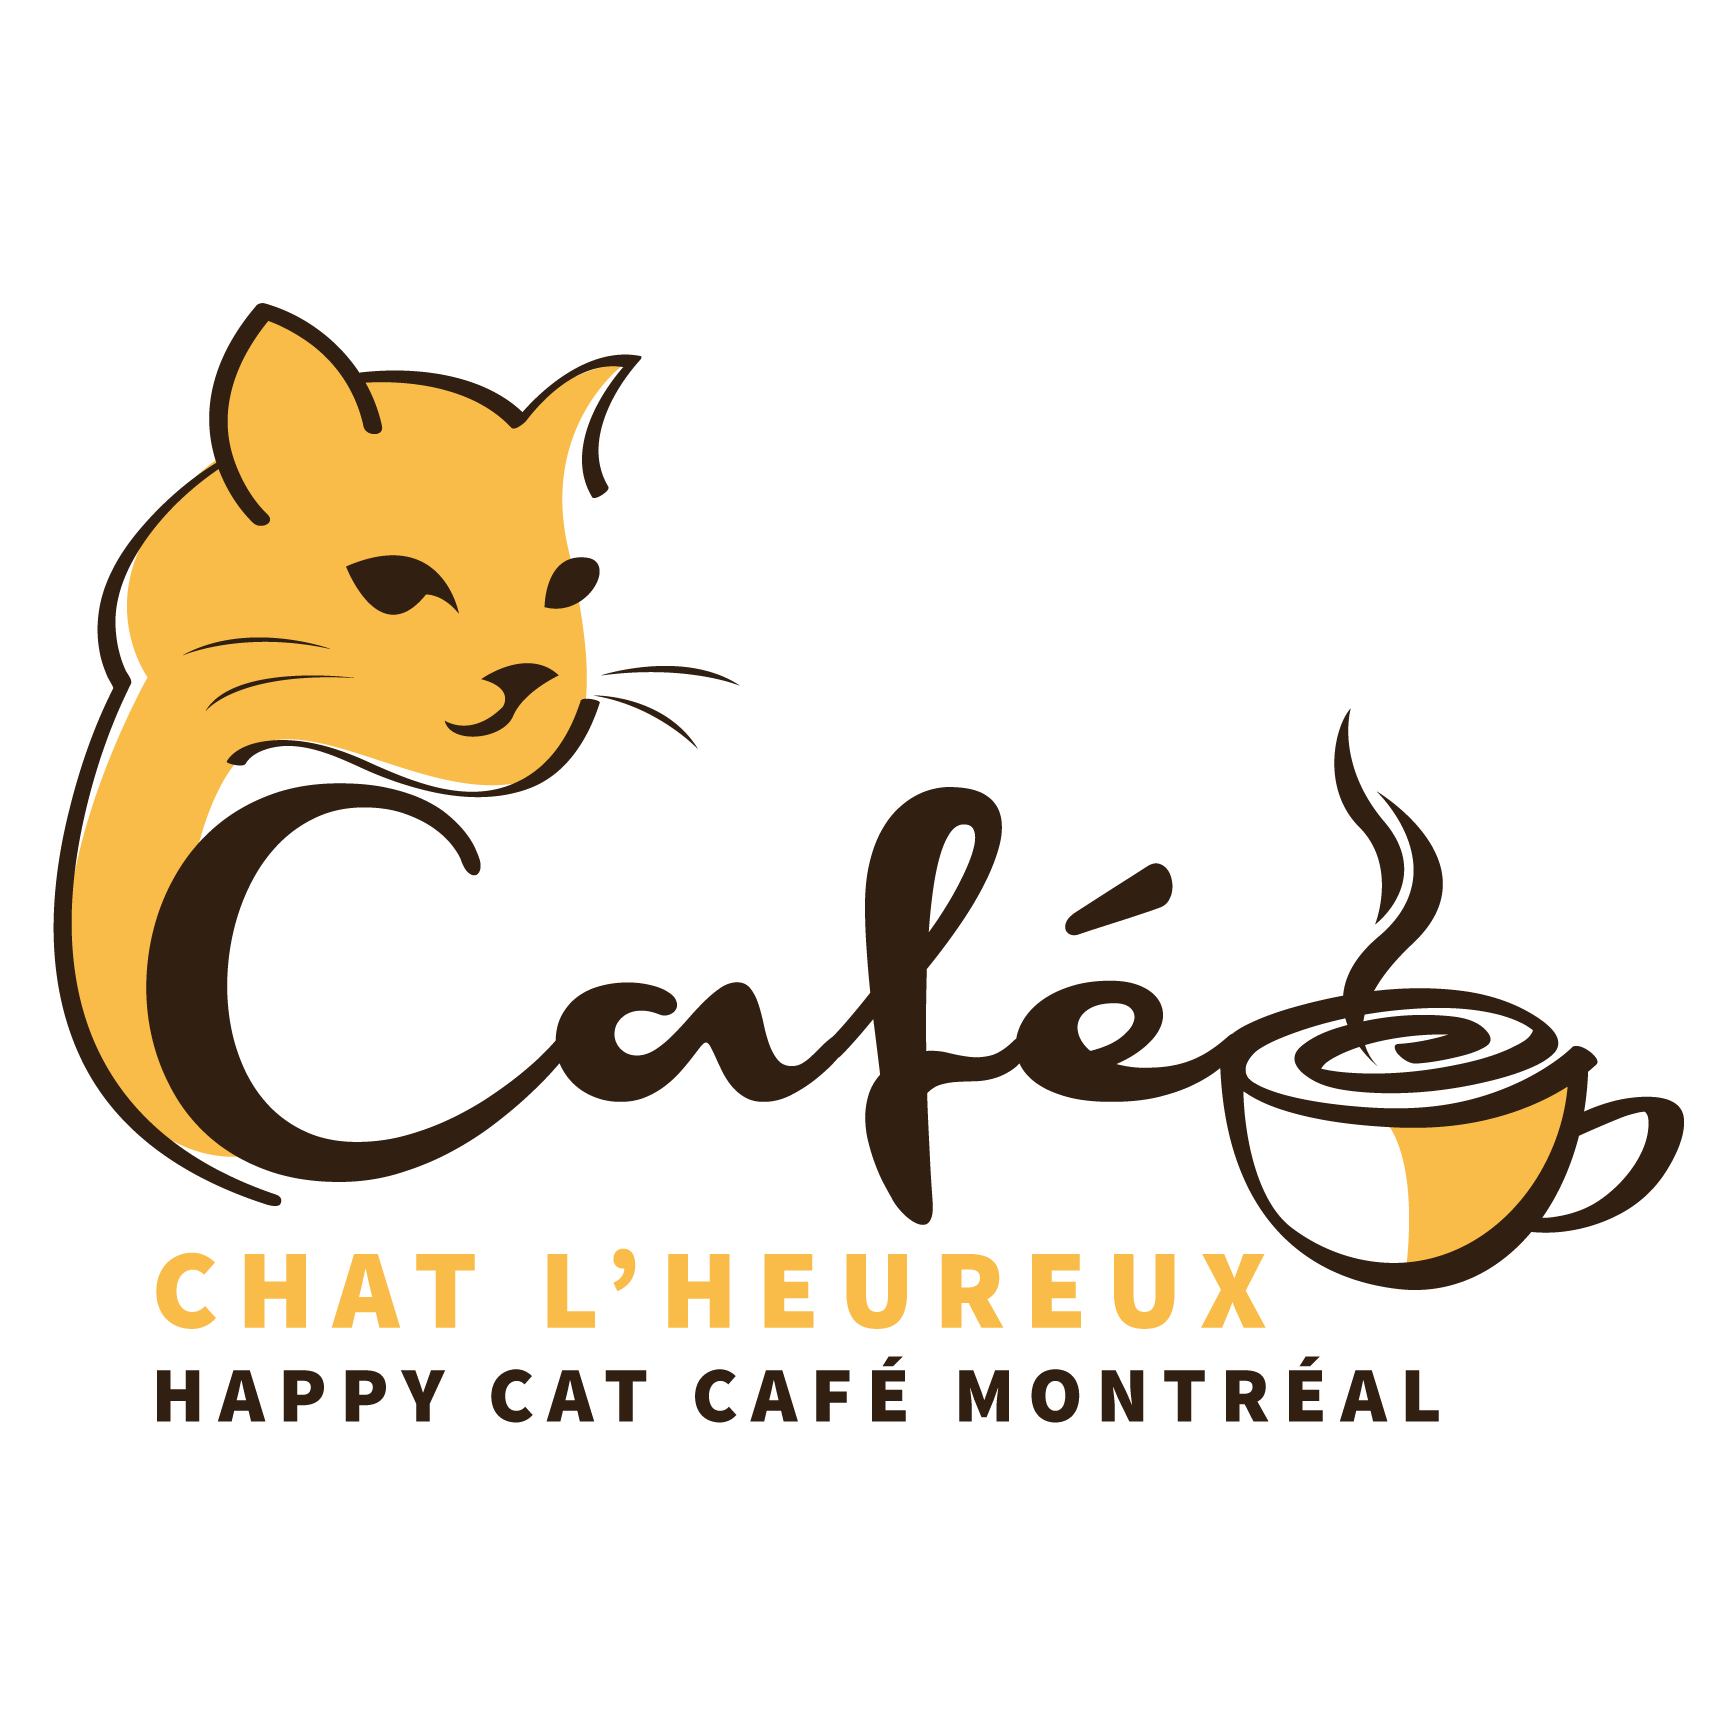 Café Chat l'heureux - Cat Café Montréal - Vegan Traveller Reviews - Ve...